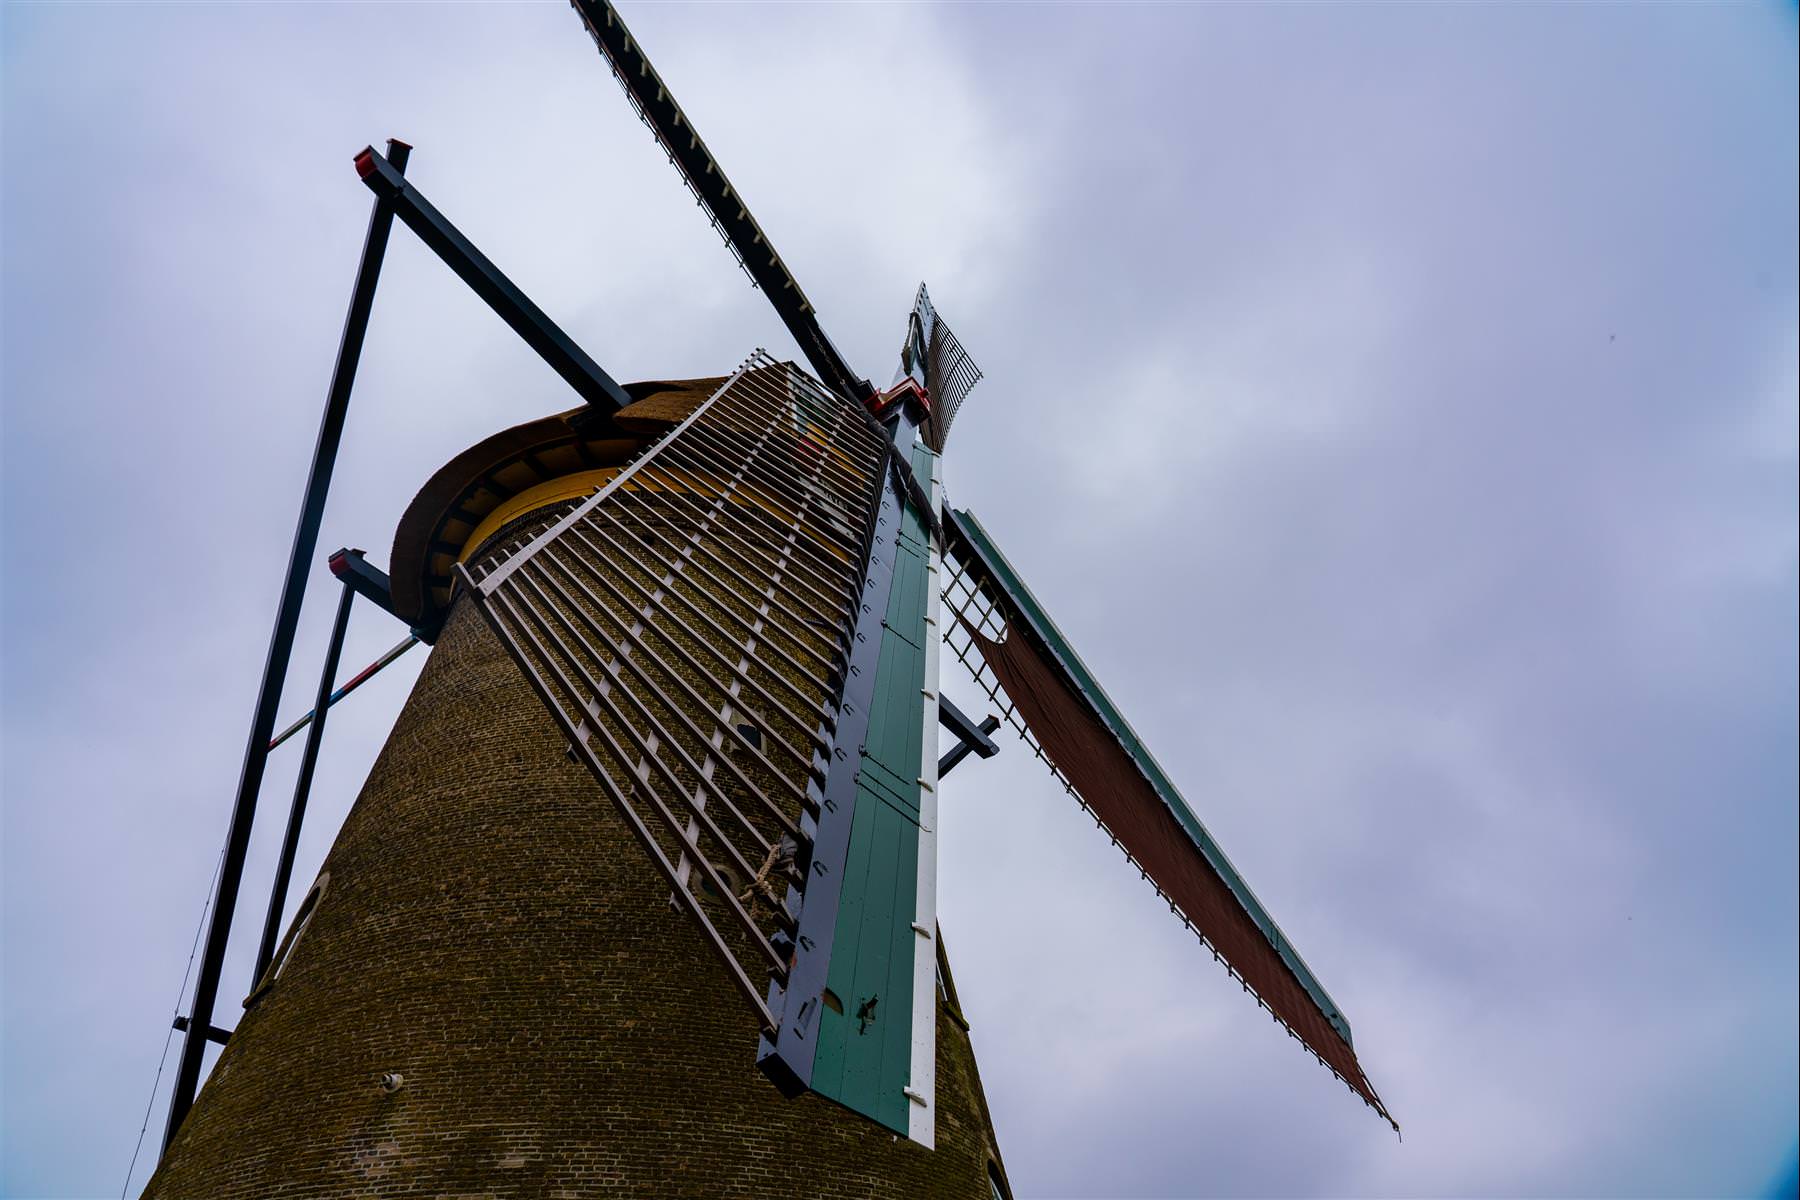 [荷蘭/新萊克蘭] 小孩提防 kinderdijk , 悠久的風車歷史，鹿特丹近郊風車景點